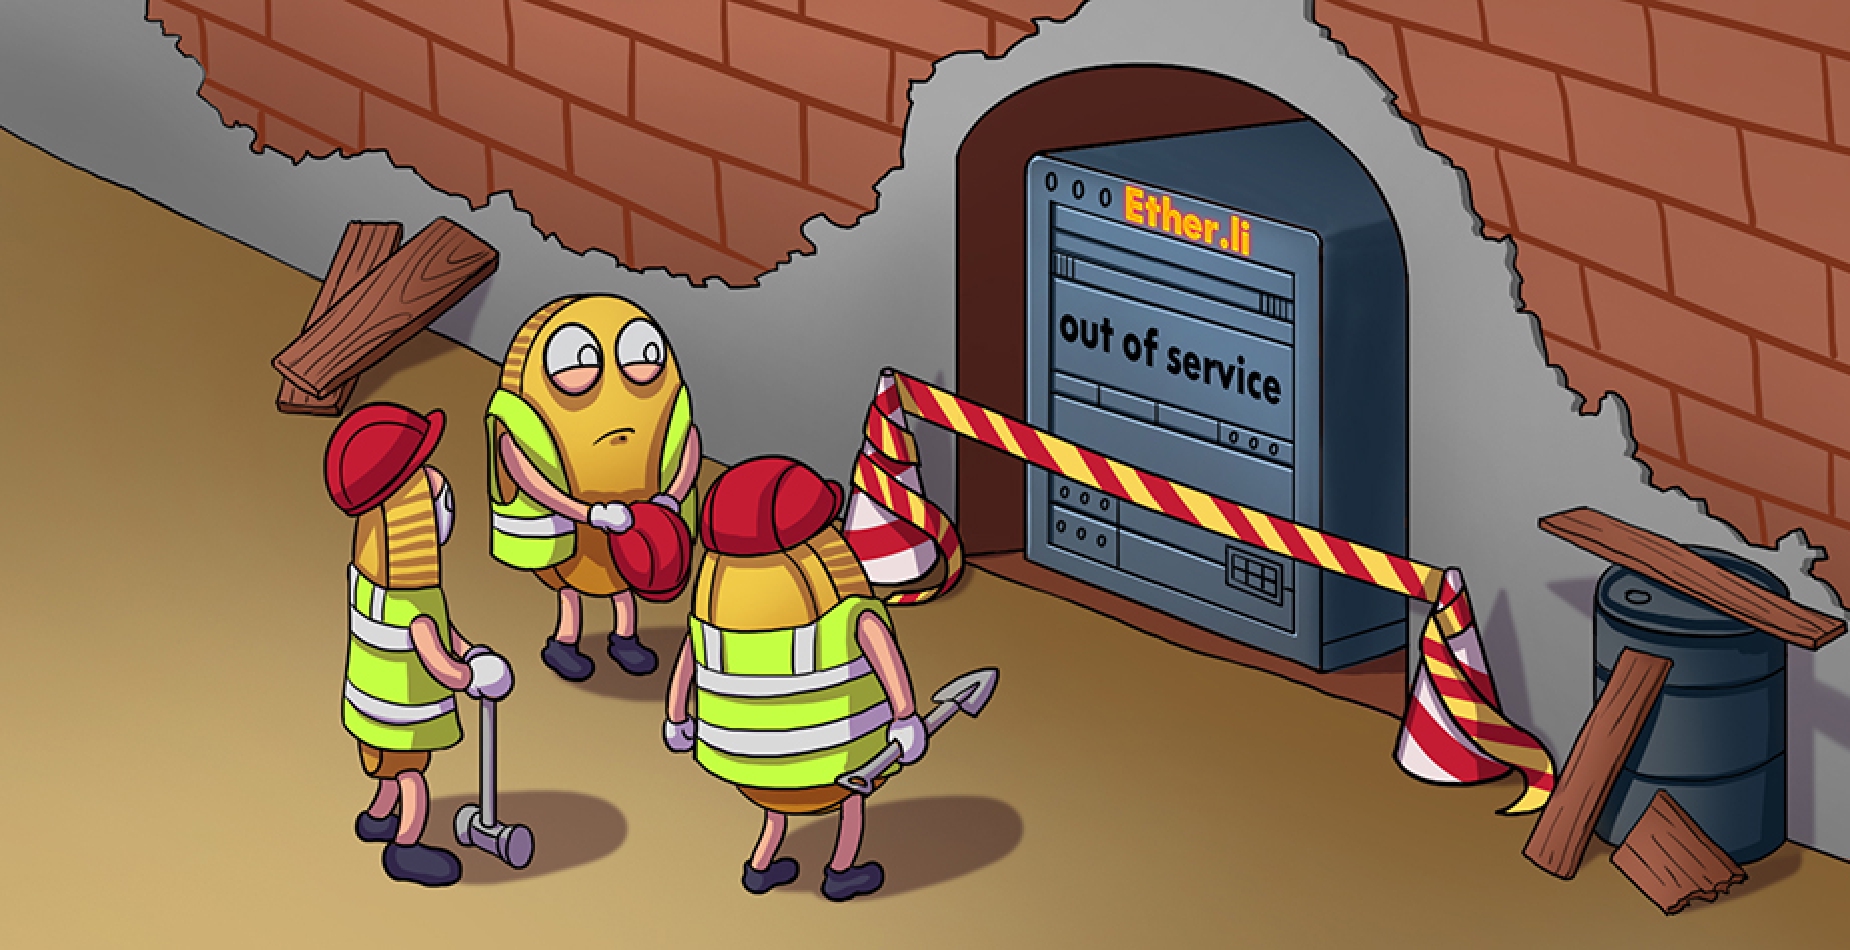 Drei Arbeiter stehen vor dem Ether.li Server, welcher die Meldung "out of service" anzeigt.